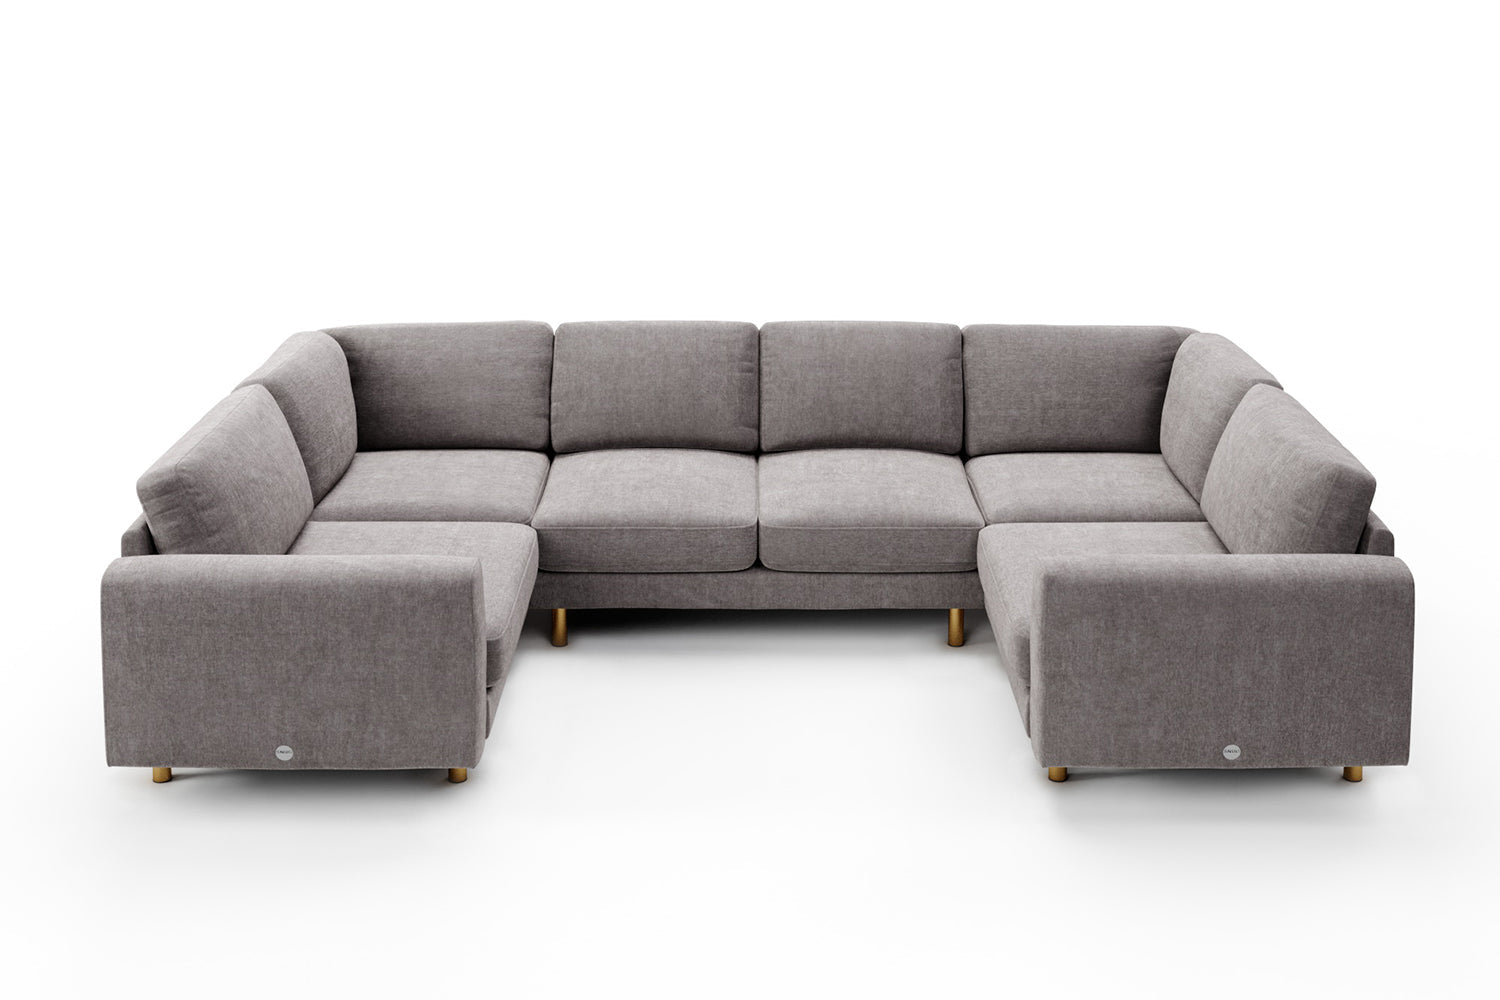 SNUG | The Big Chill Corner Sofa Medium in Mid Grey